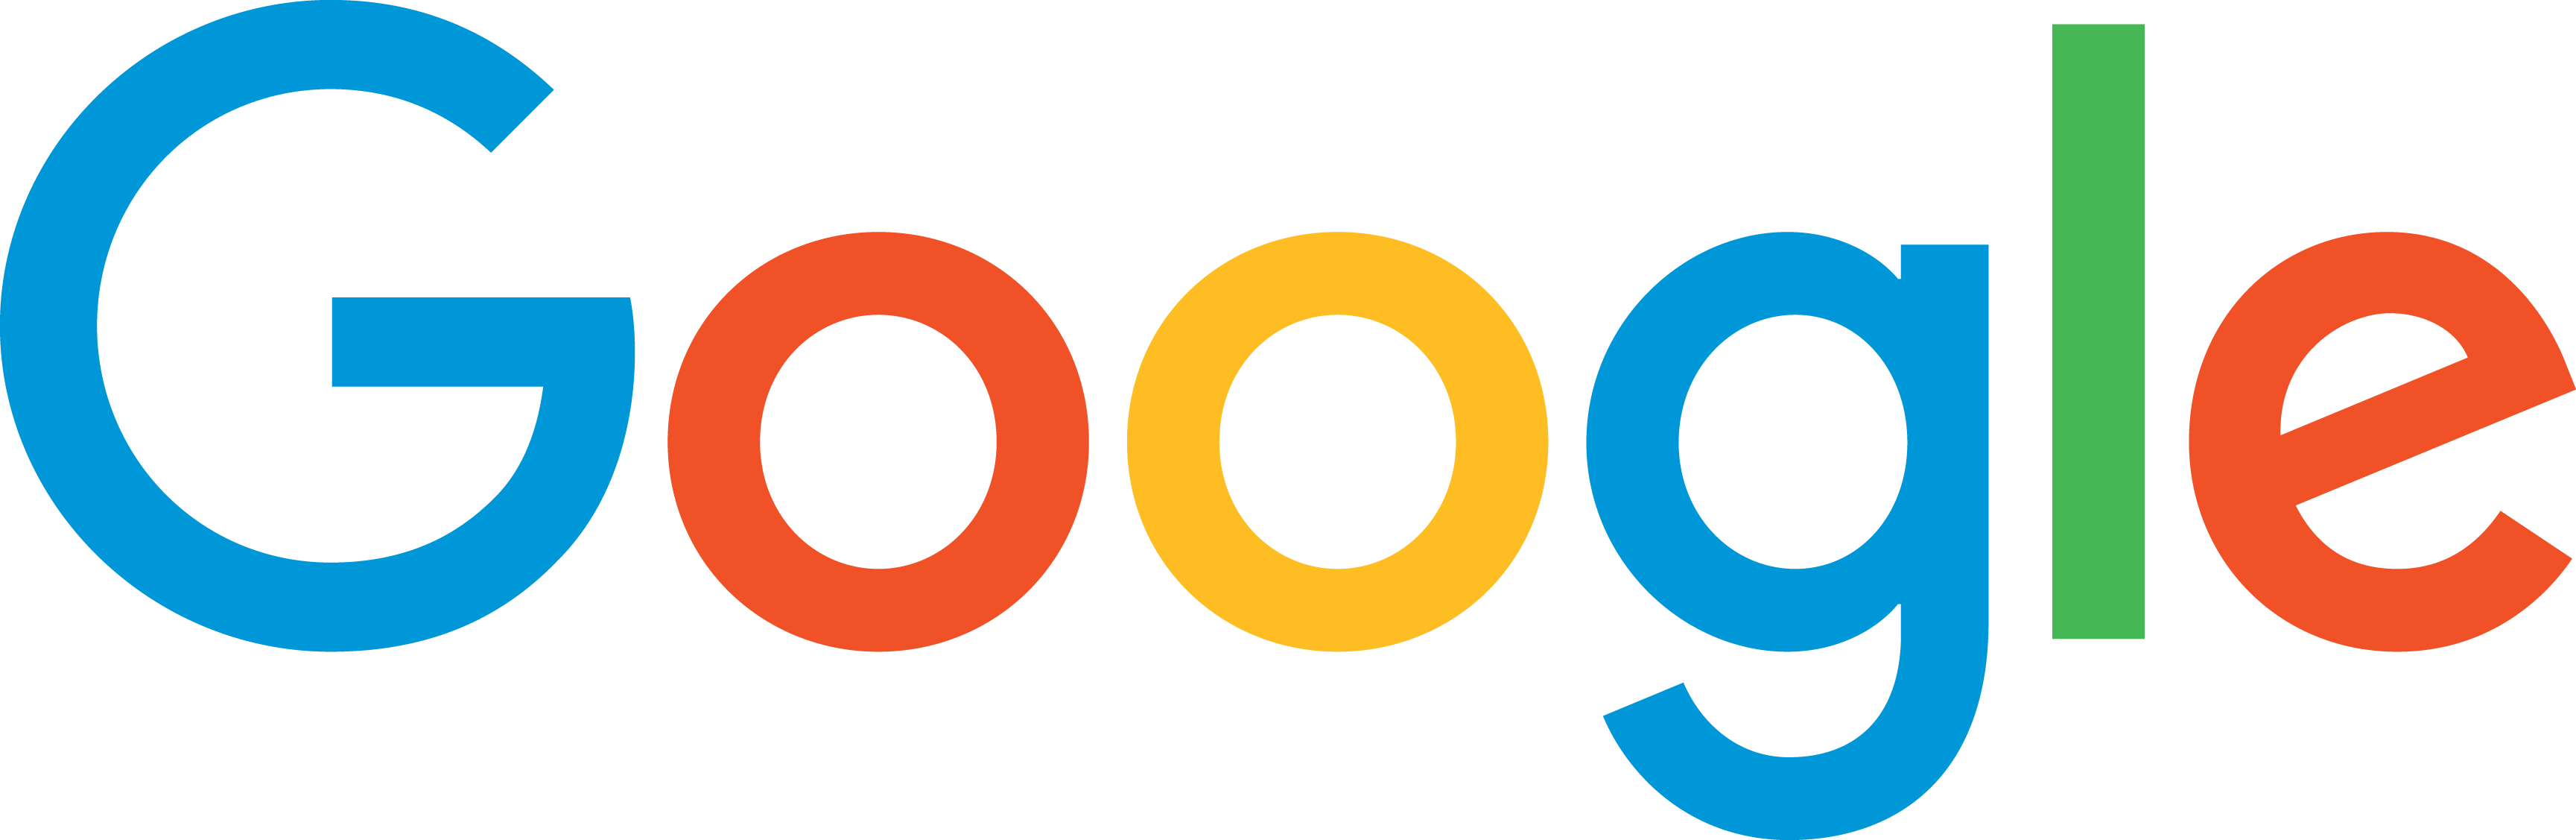 logo_Google_FullColor_cmykU_830x271pt (1)-png